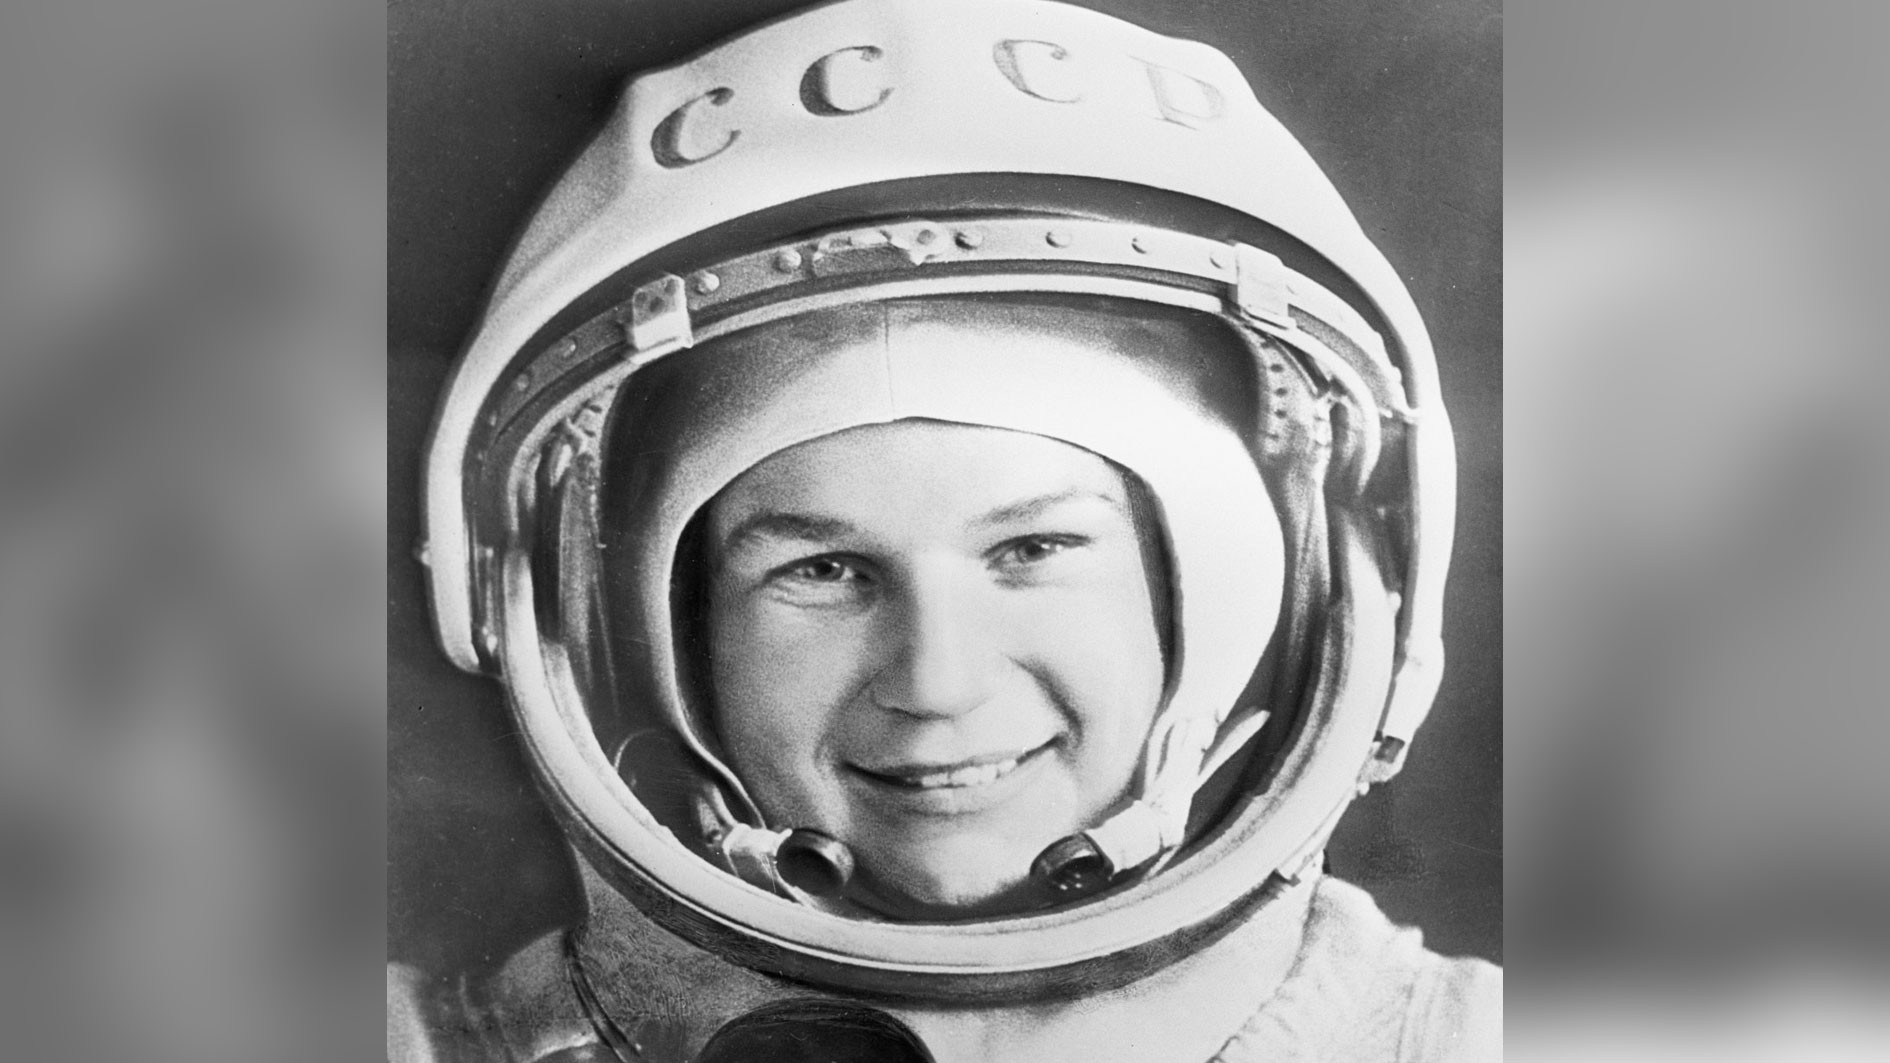 Первая женщина космонавт совершившая полет